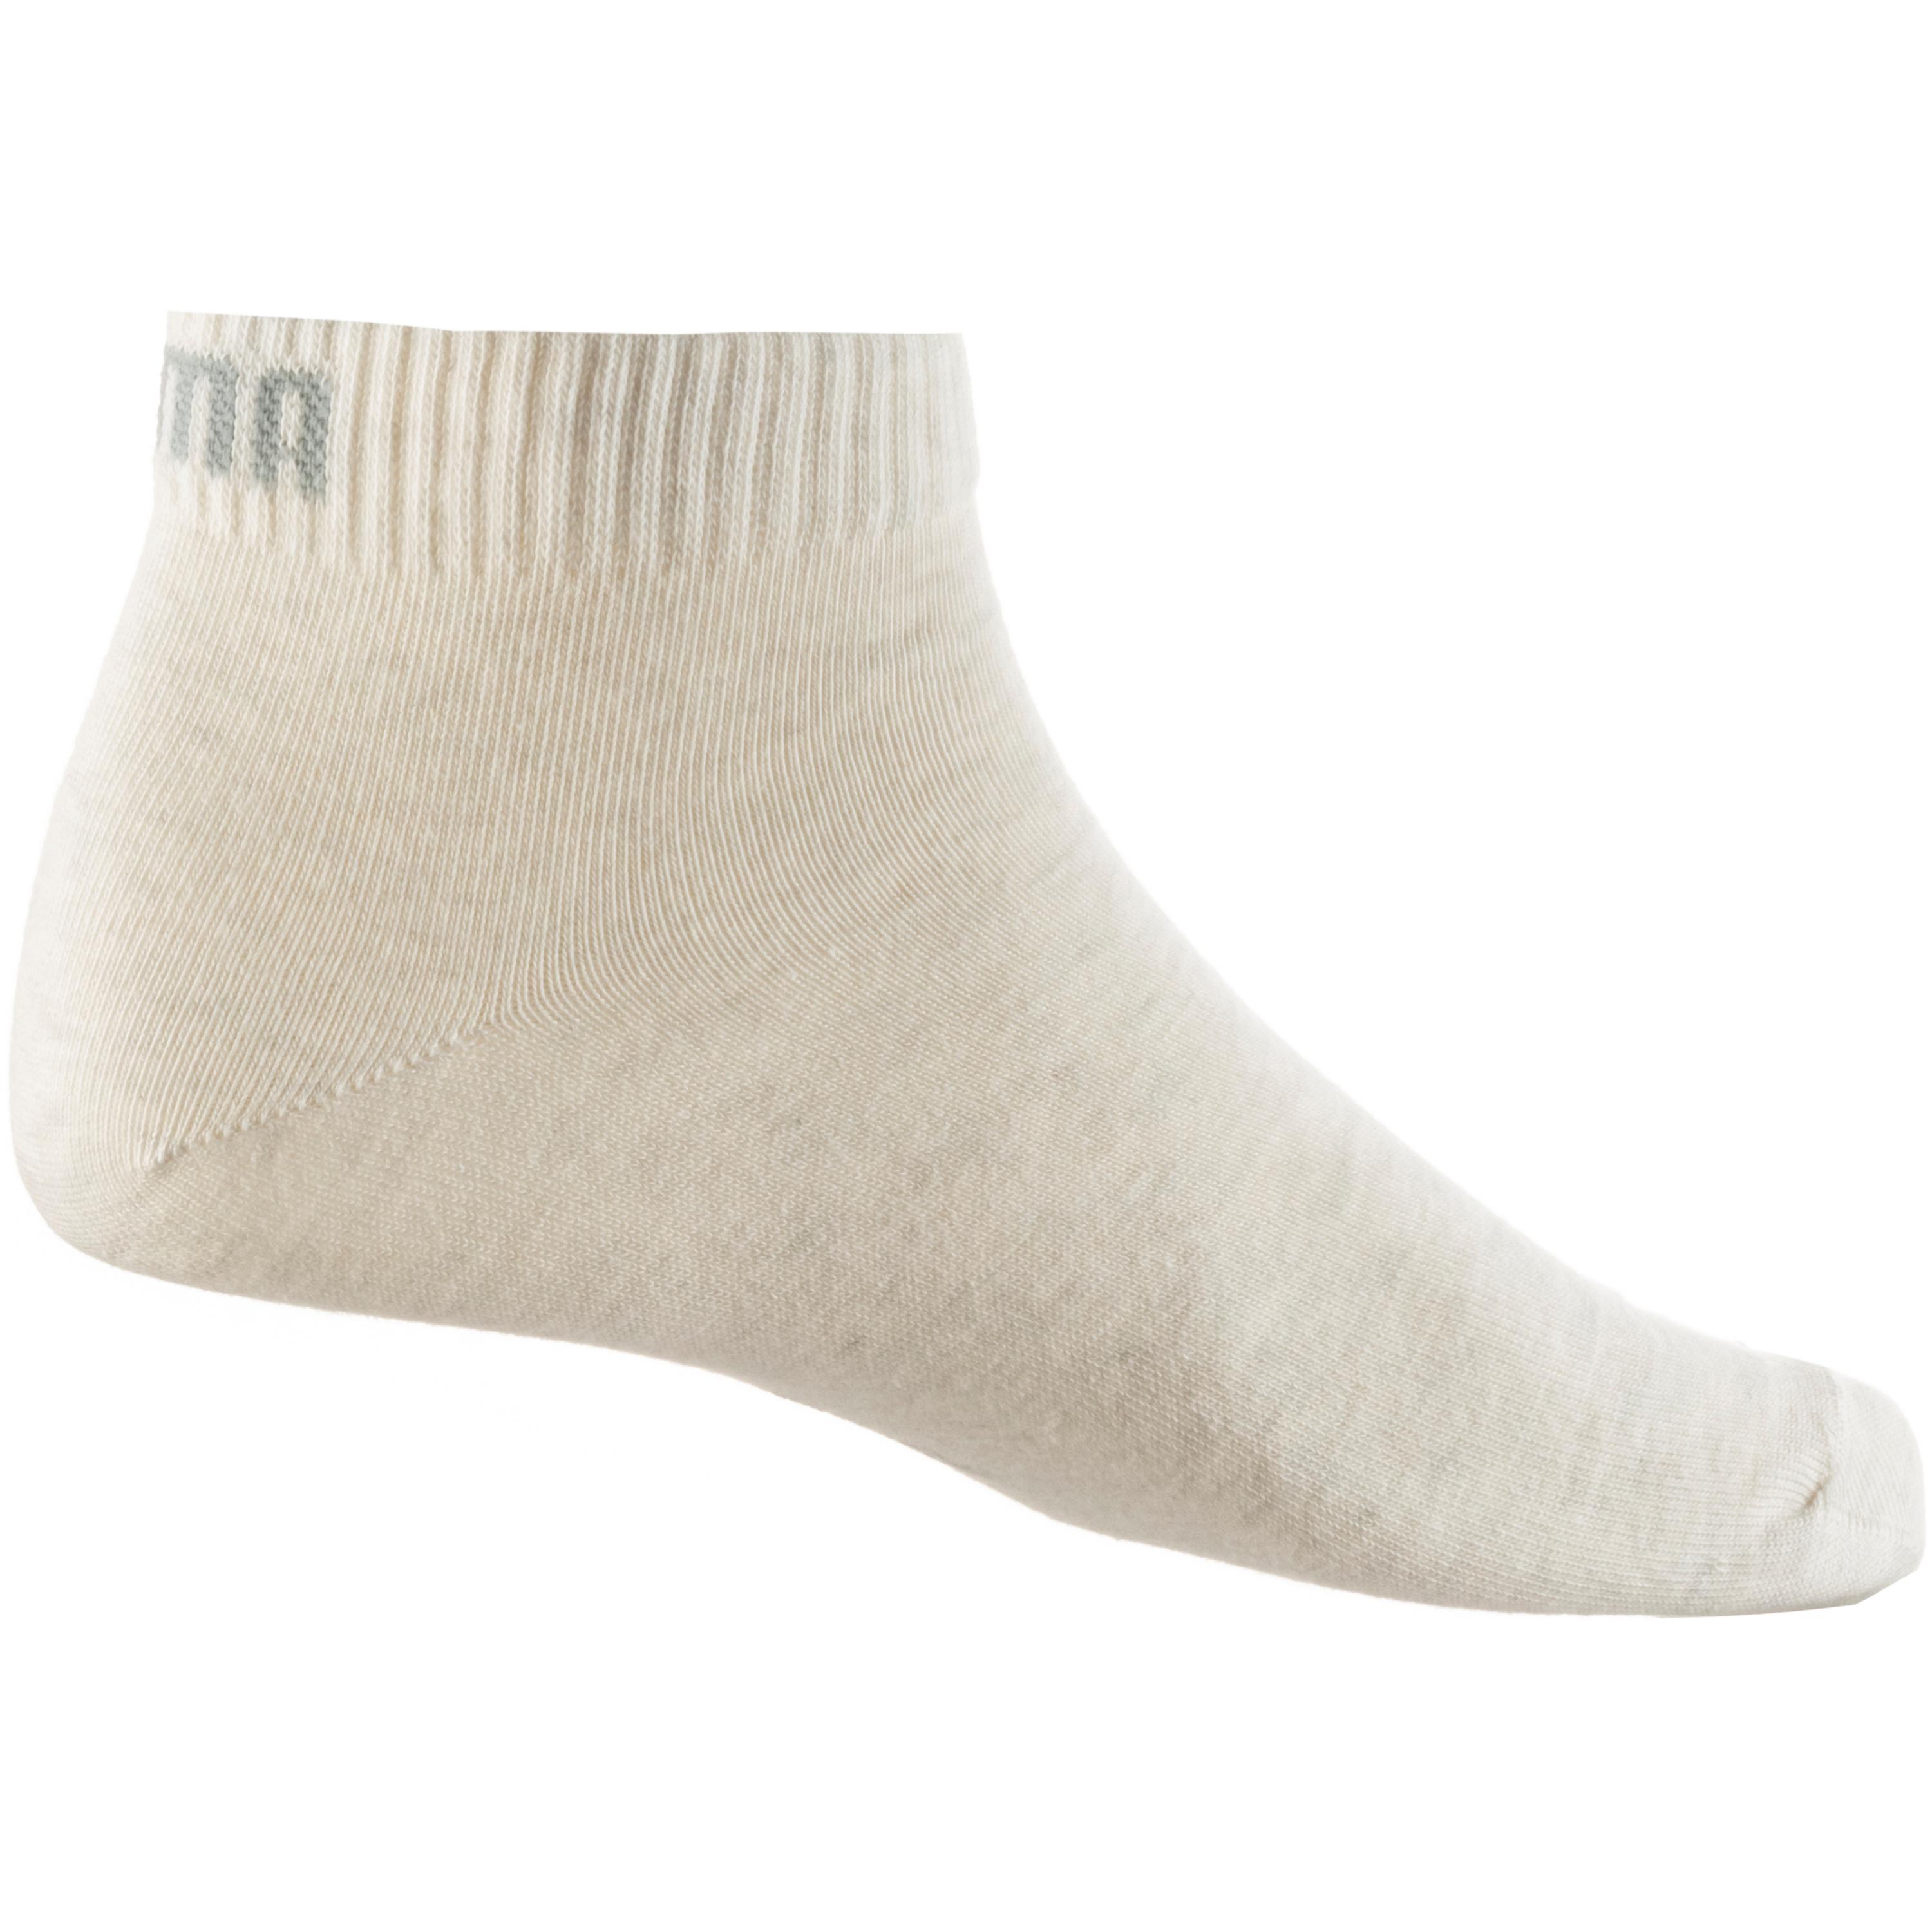 PUMA Socken in Weißmeliert 